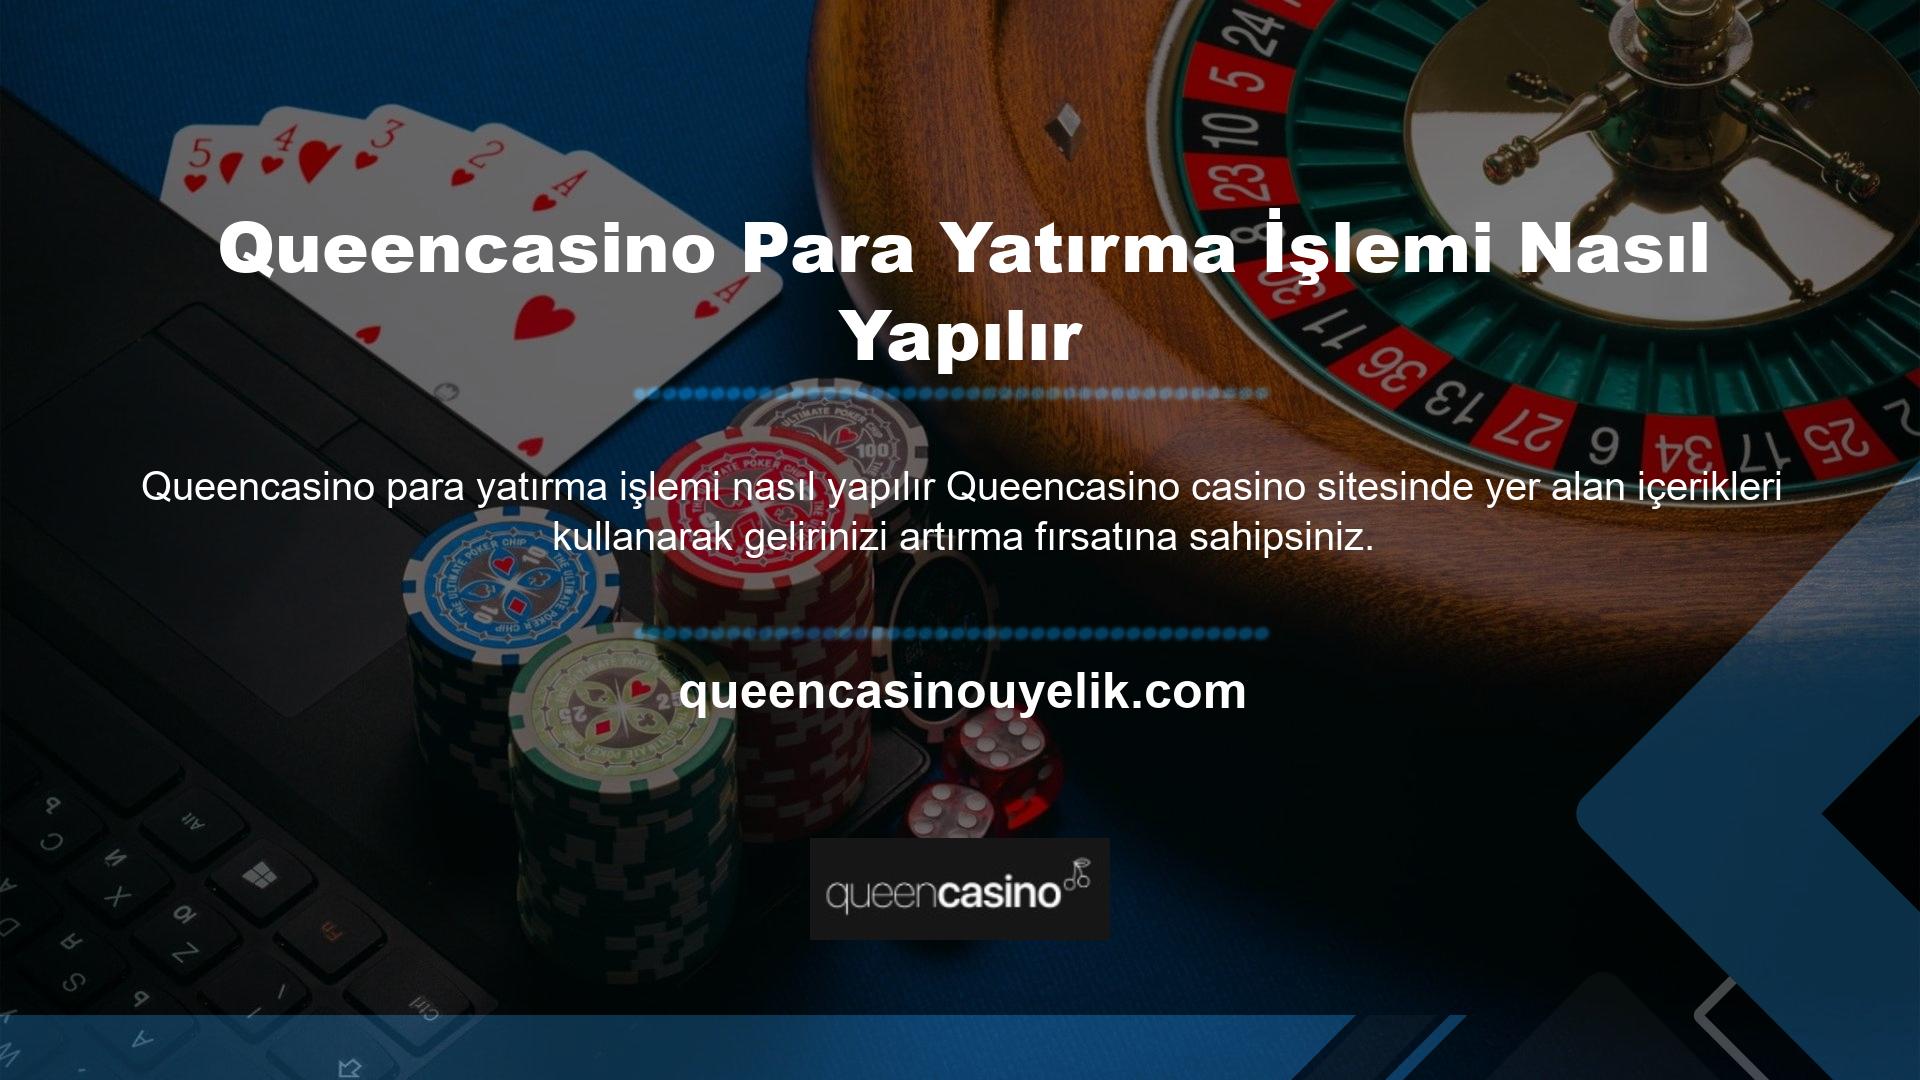 Casino sitelerinde para yatırmak için siteye kayıt olmanız gerekmektedir